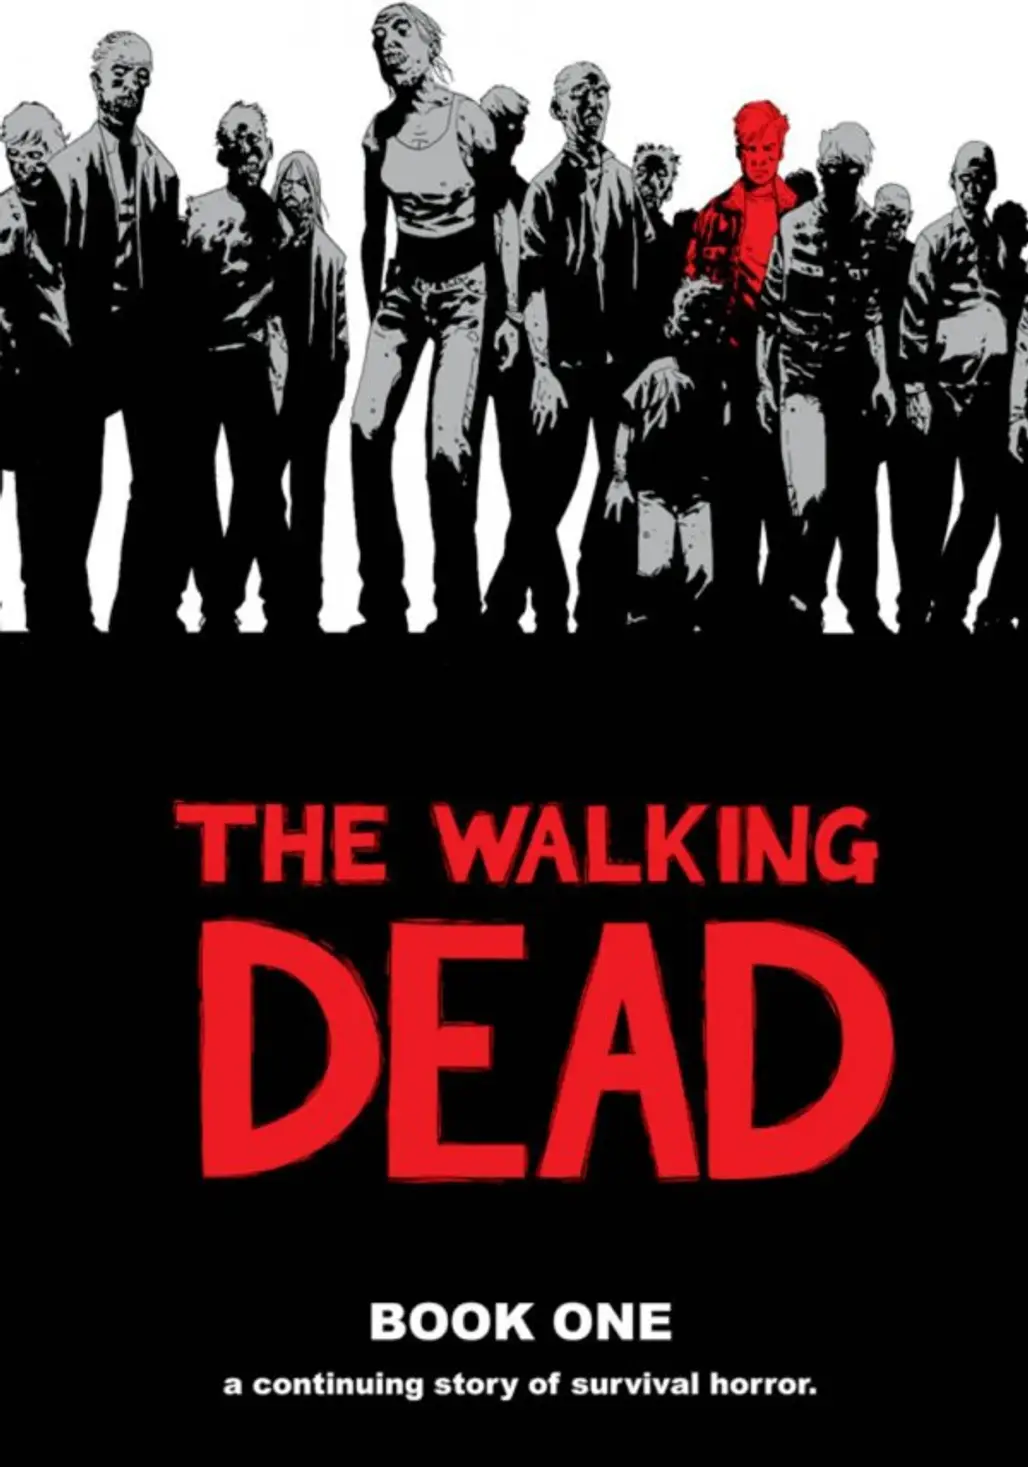 The Walking Dead by Robert Kirkman